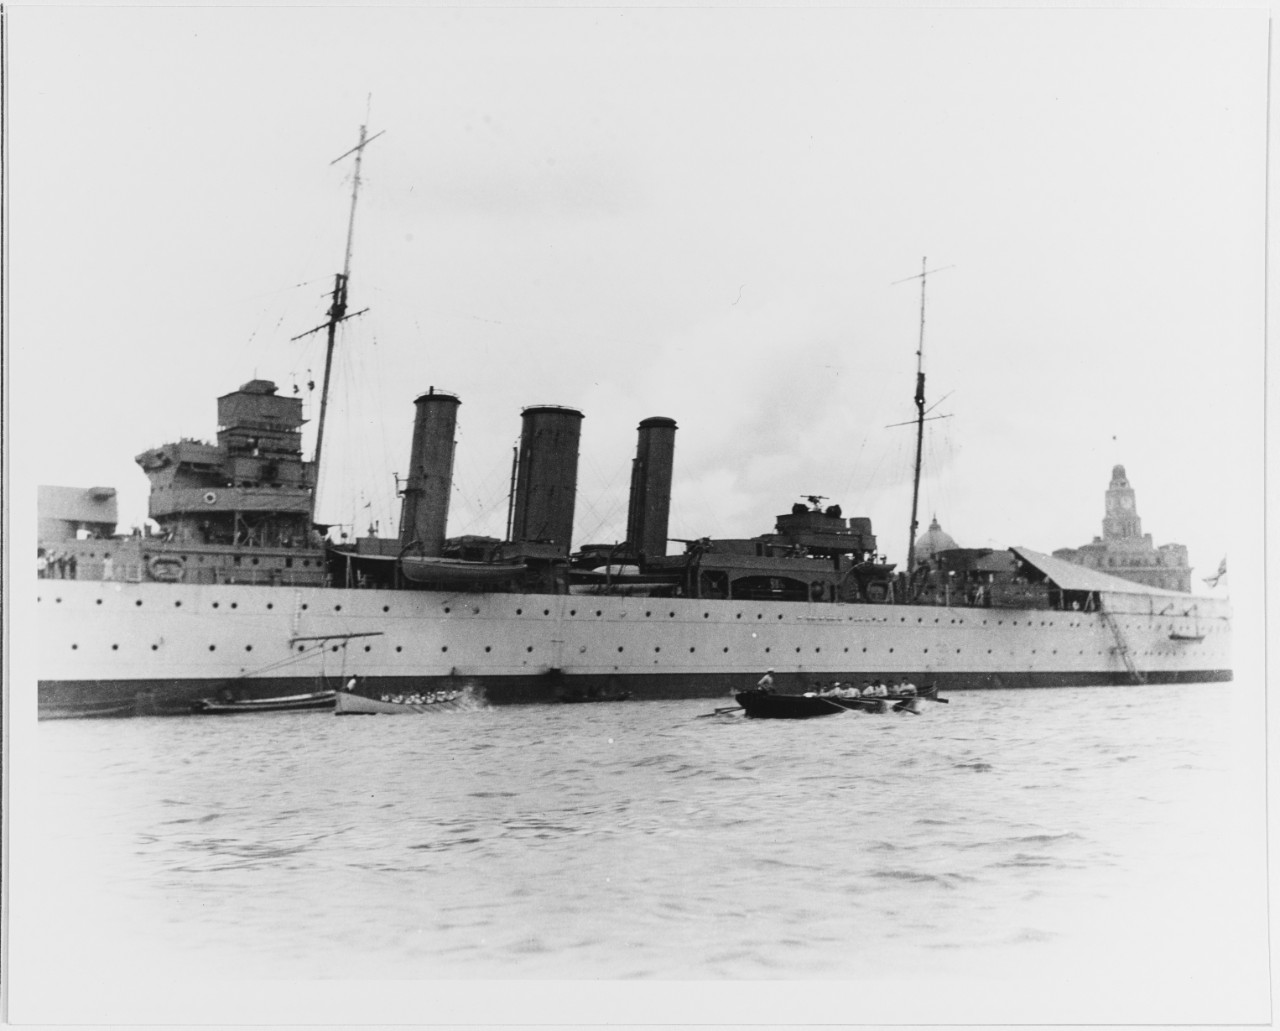 HMS KENT (British Cruiser, 1926)